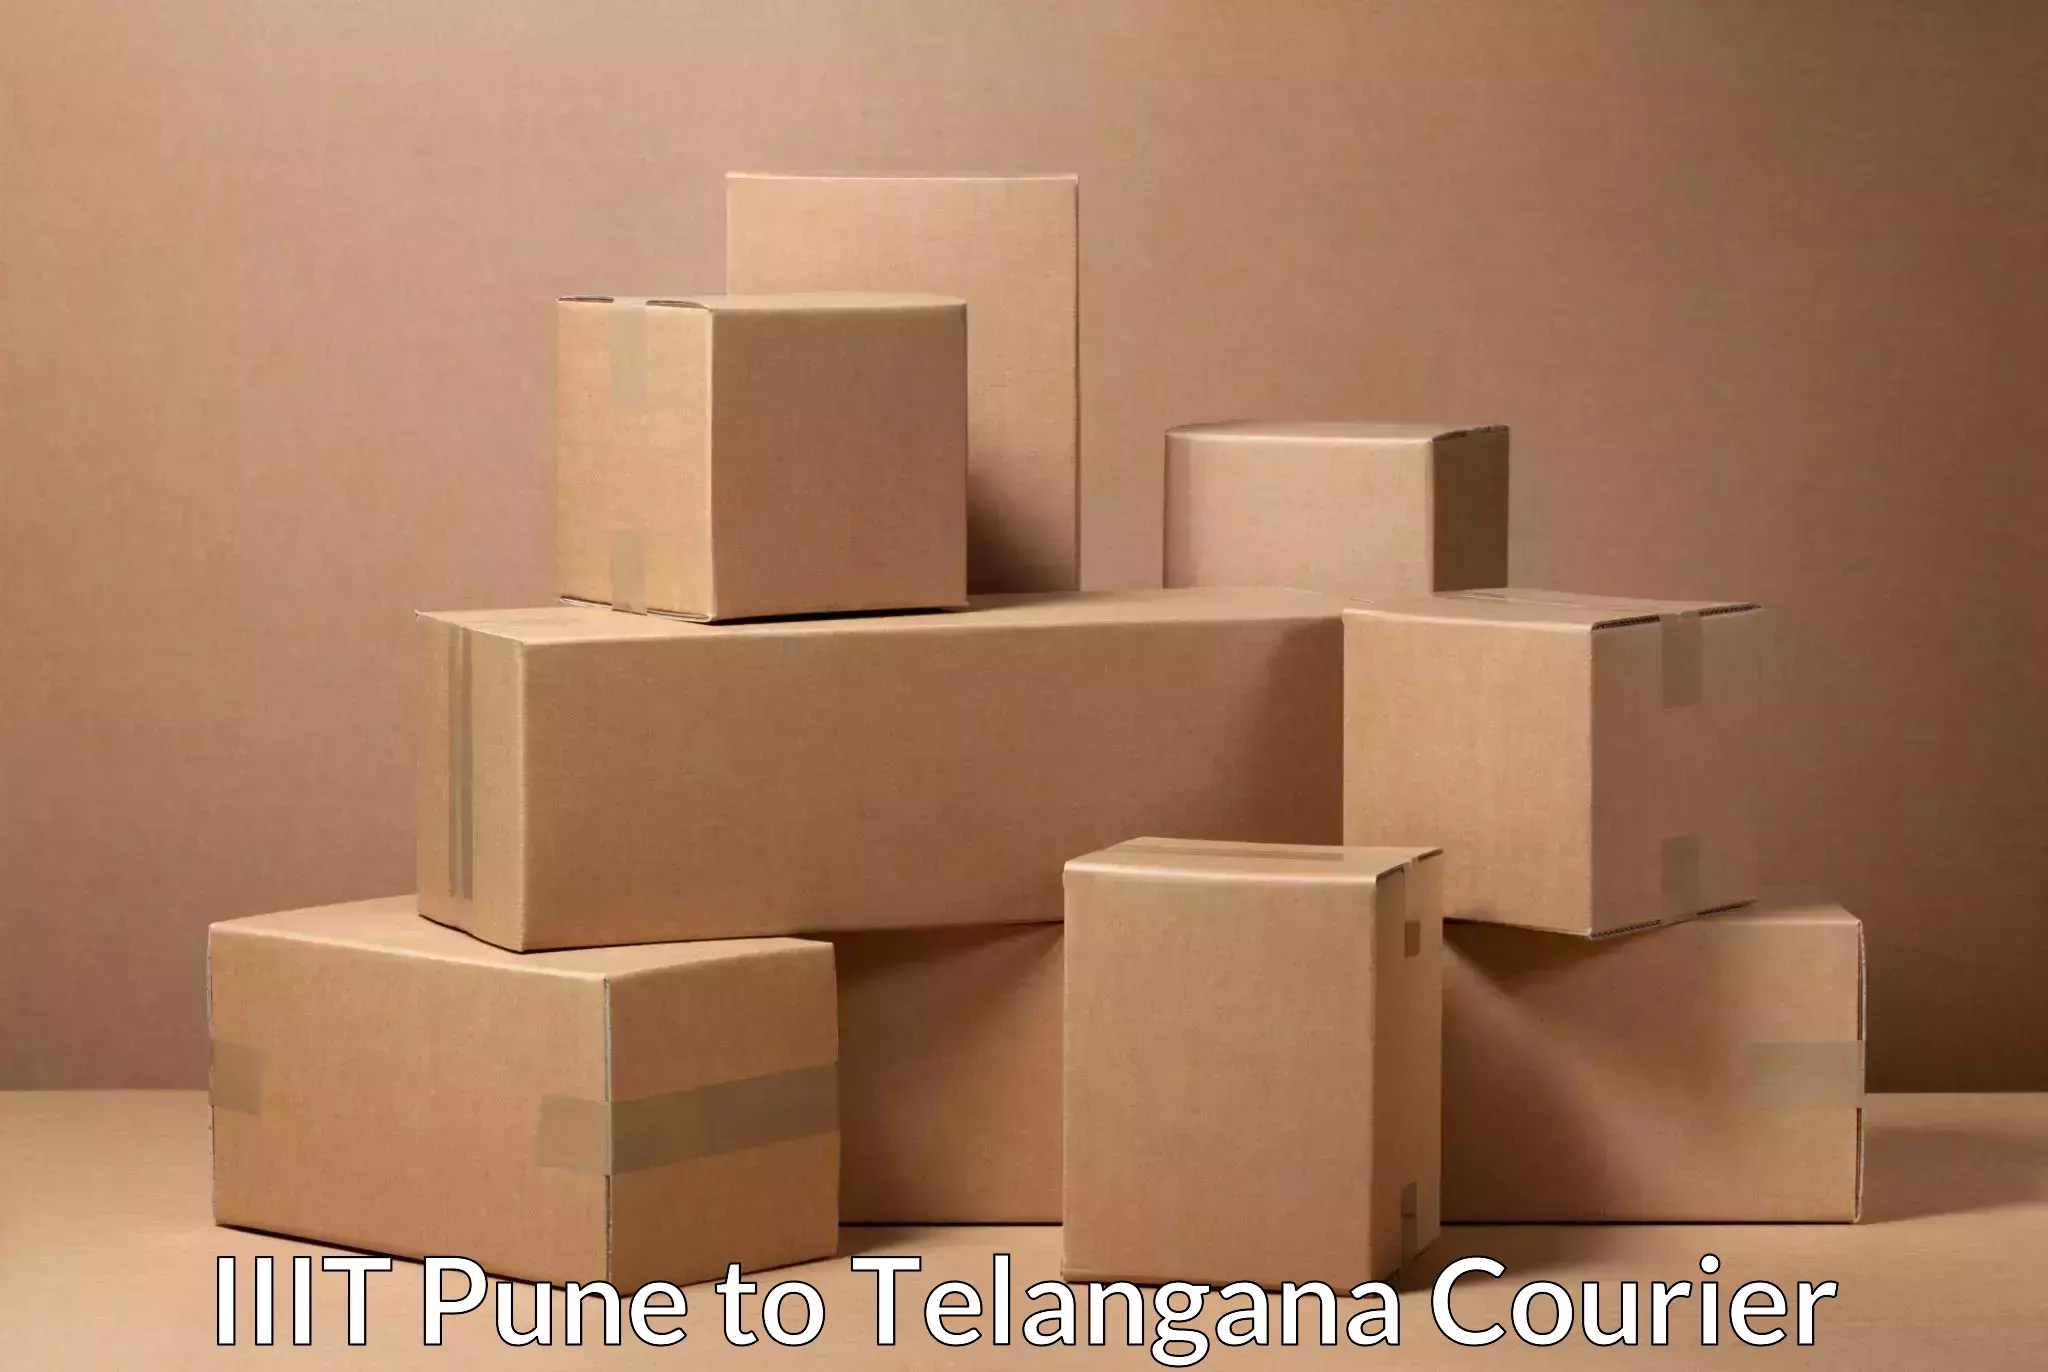 Small parcel delivery IIIT Pune to Veenavanka